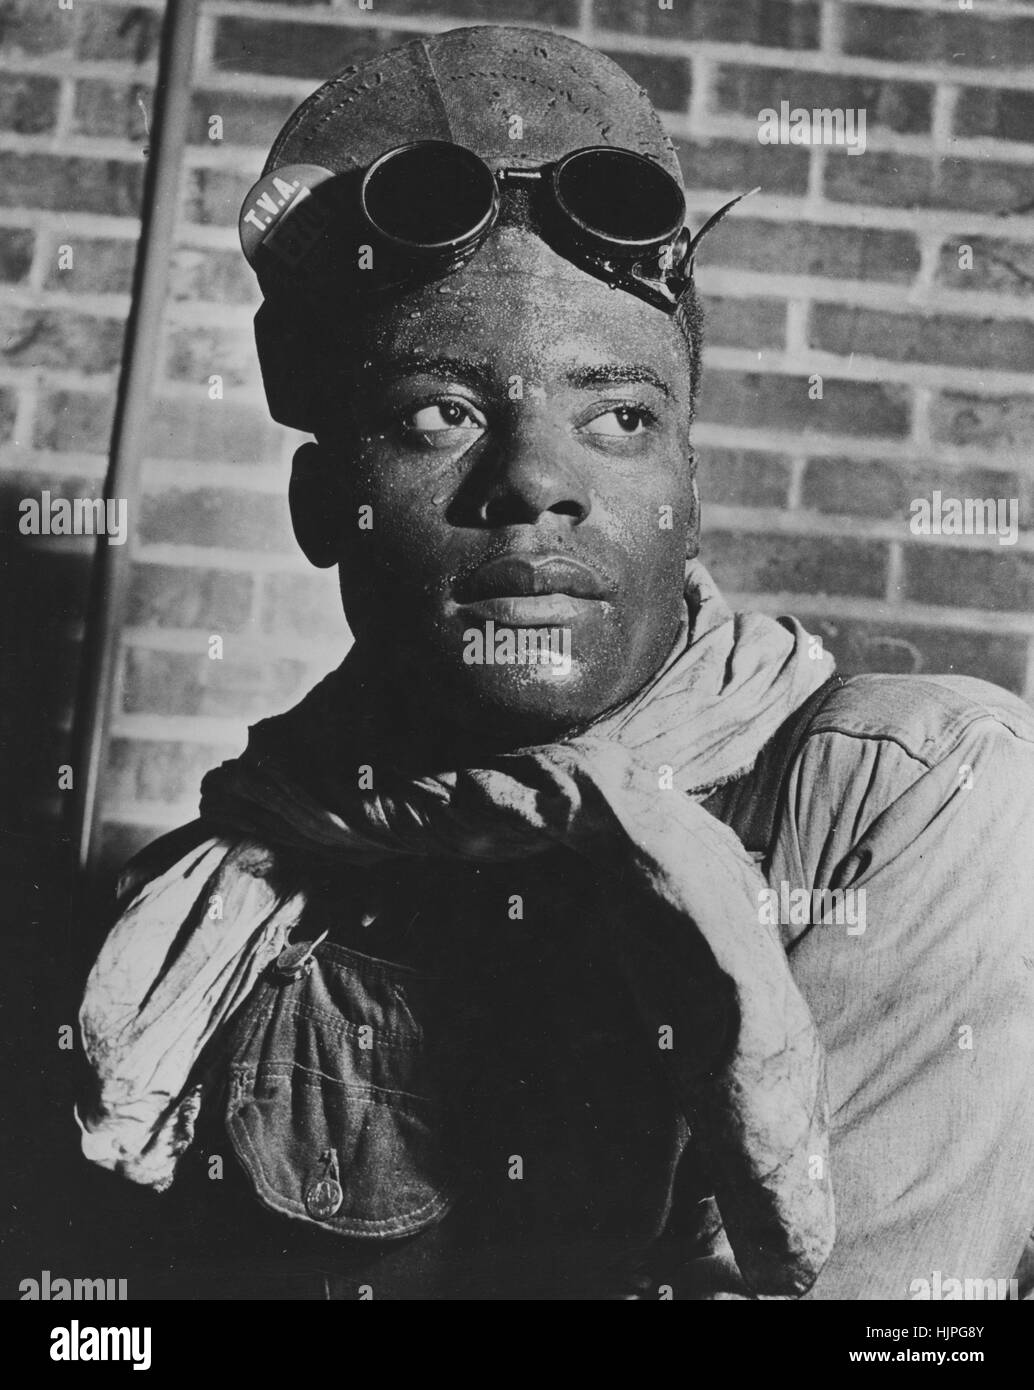 Ritratto di un Africano lavoratore americano per la Tennessee Valley Authority, indossando tute, cappello e occhiali, 1942 Foto Stock